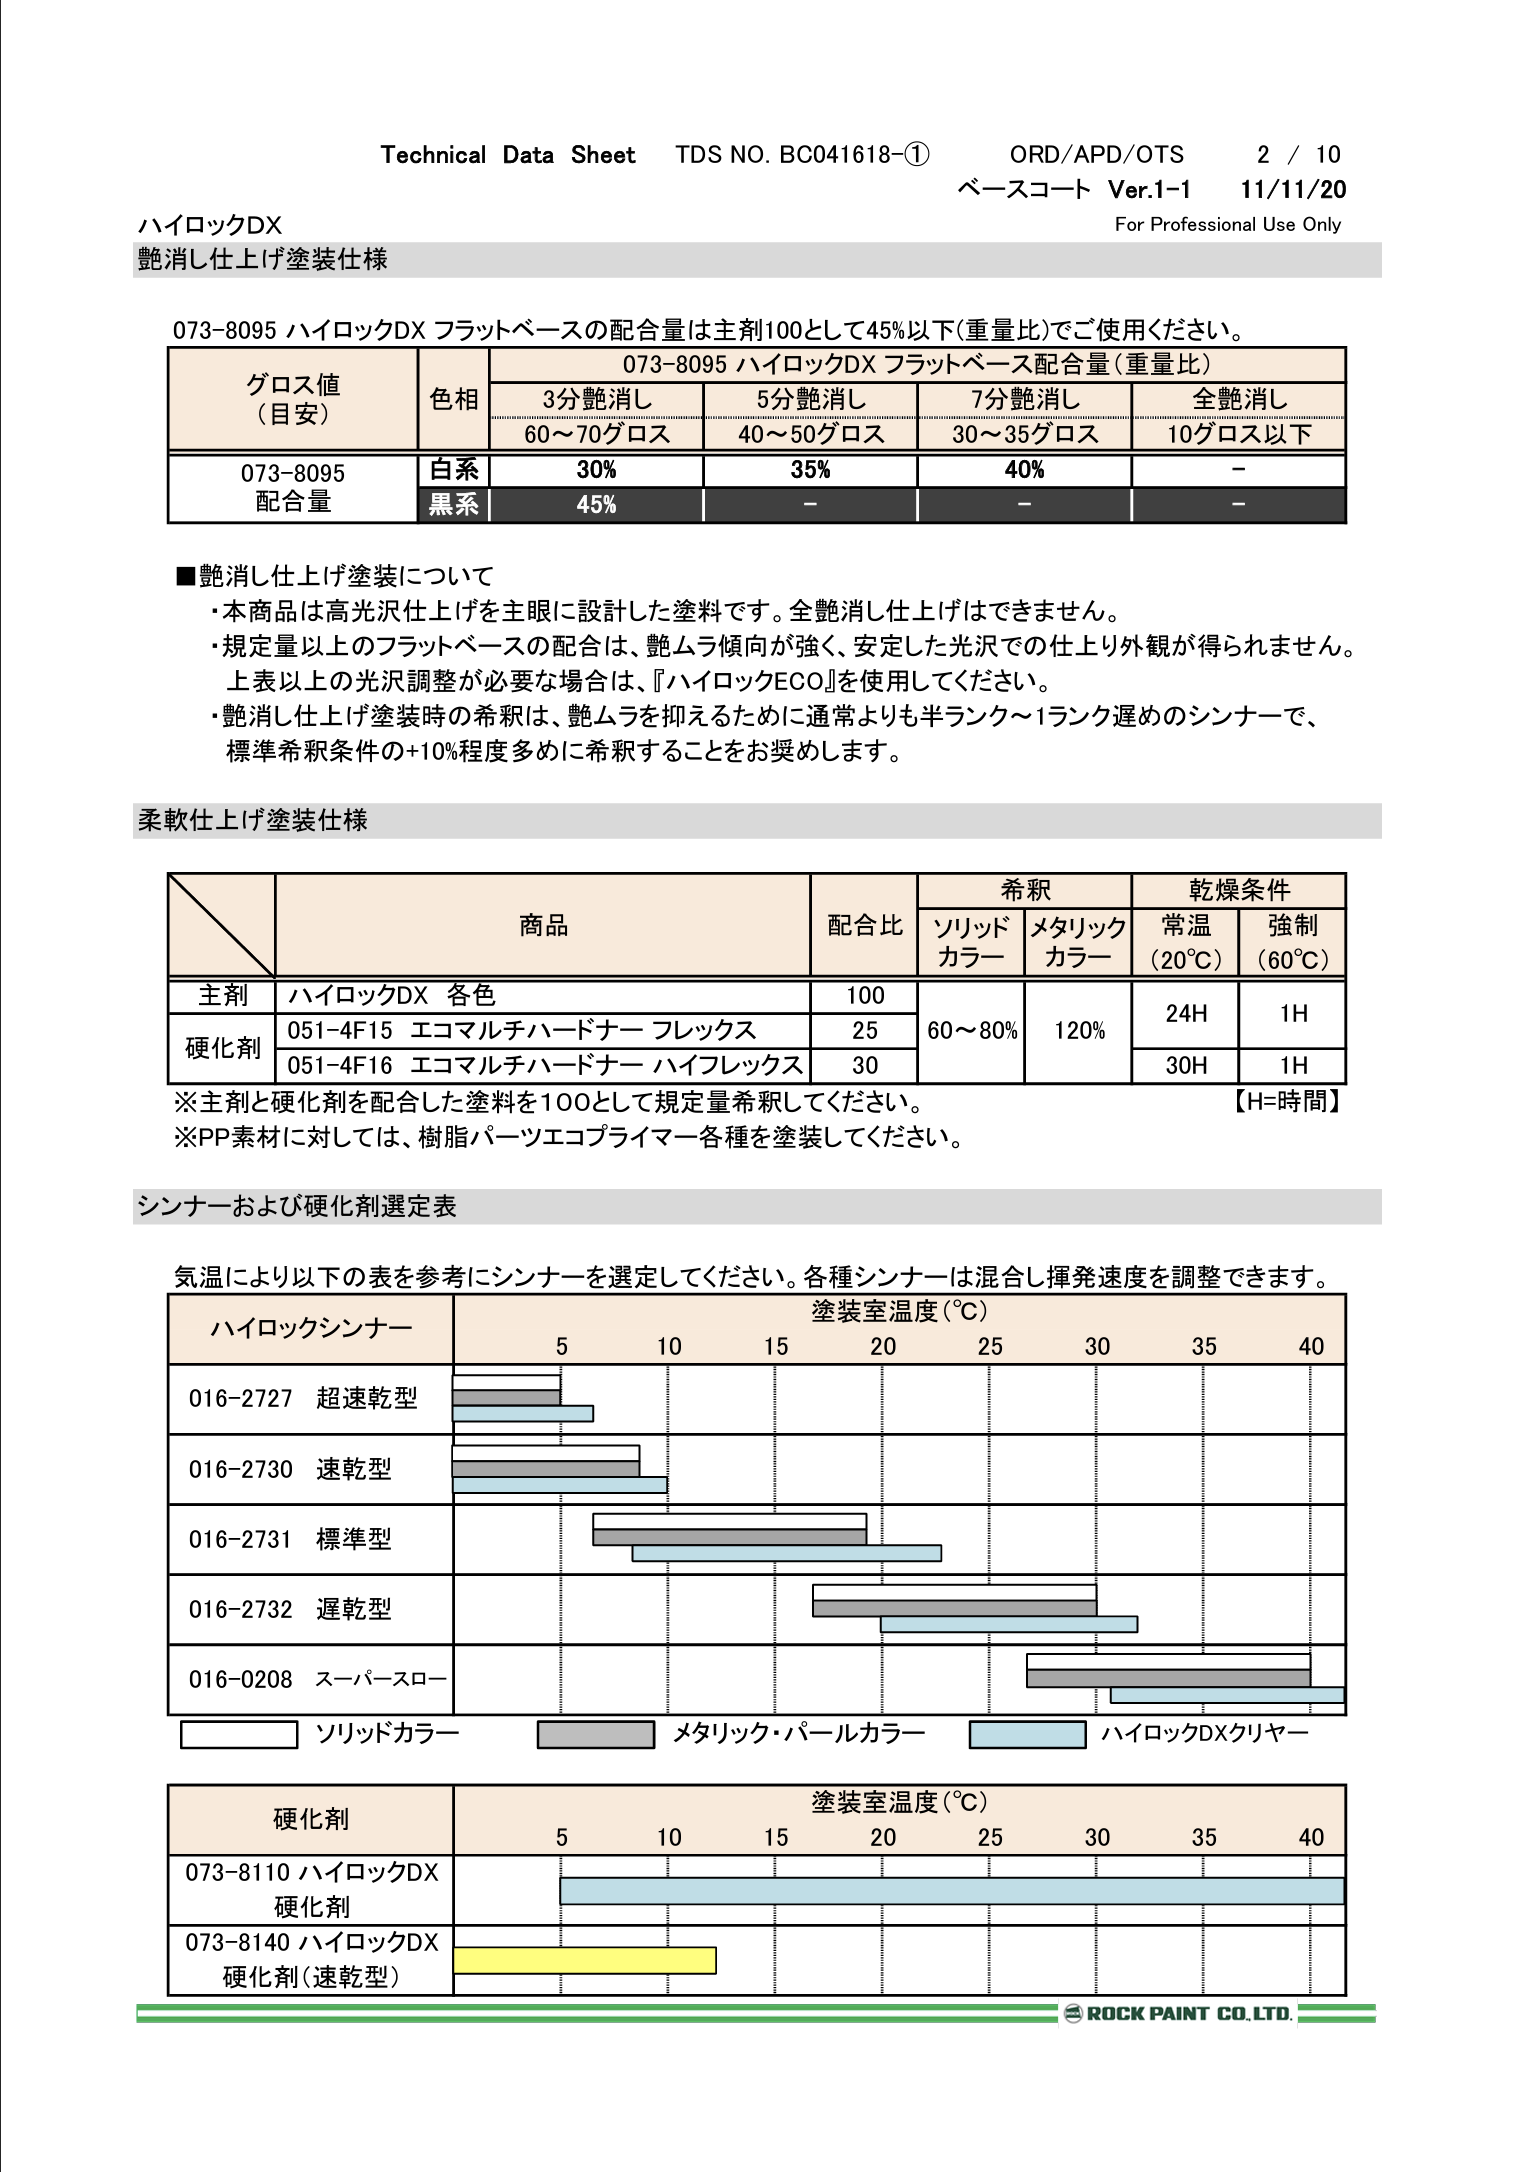 日本 自動車塗料 ロックペイント 073-8204 ハイロックＤＸ ホワイト 主剤 16kg 一斗缶サイズ